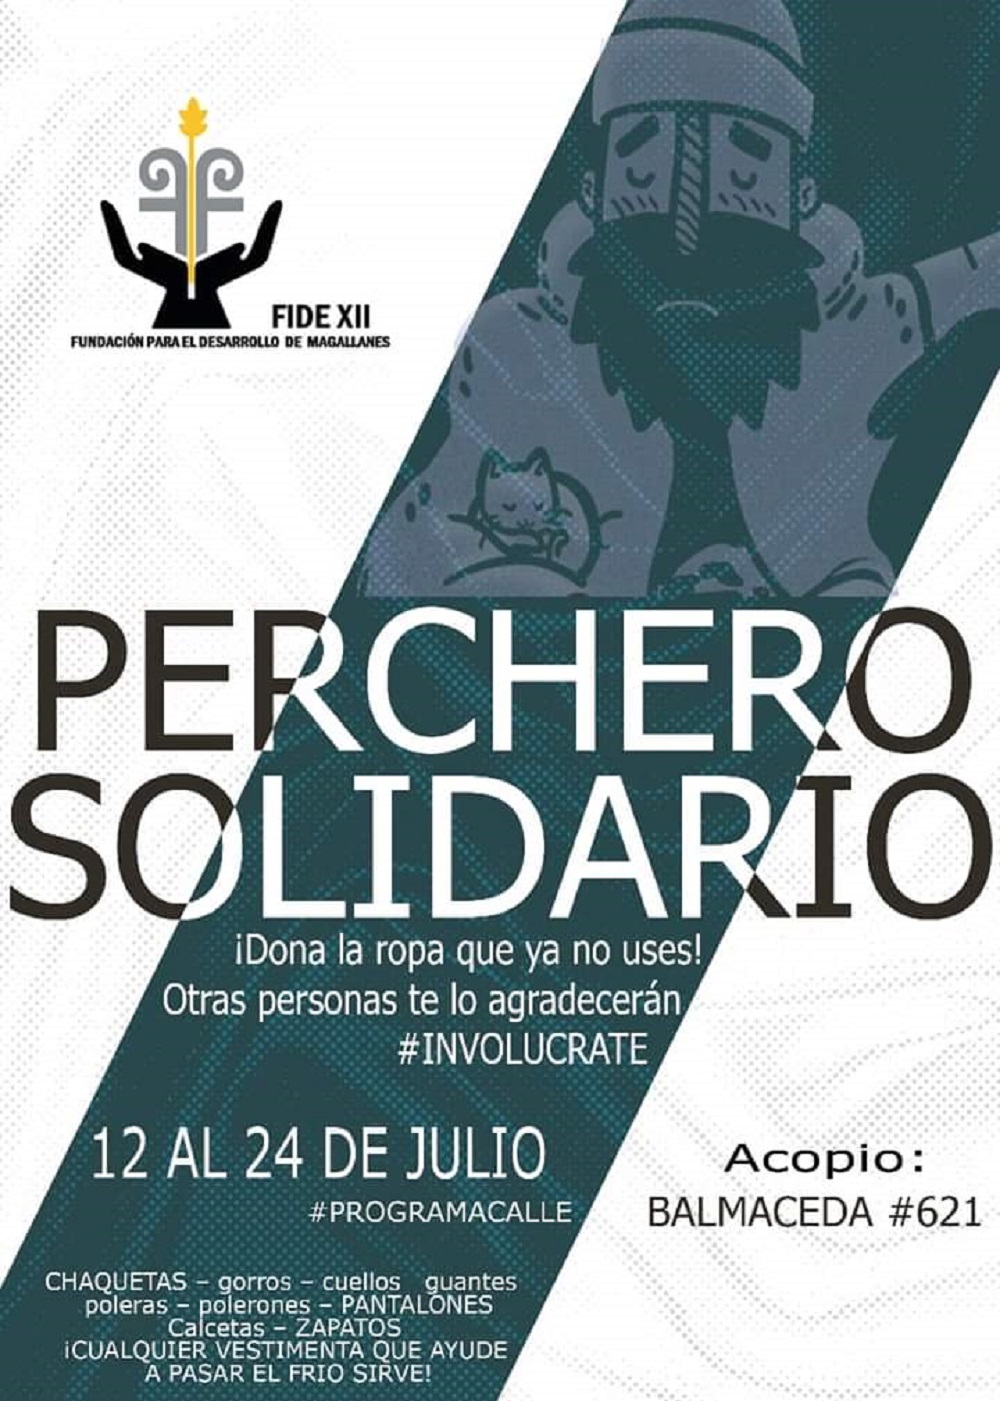 «Perchero Solidario»: FIDE XII inicia campaña solidaria de acopio de ropa de abrigo en Punta Arenas